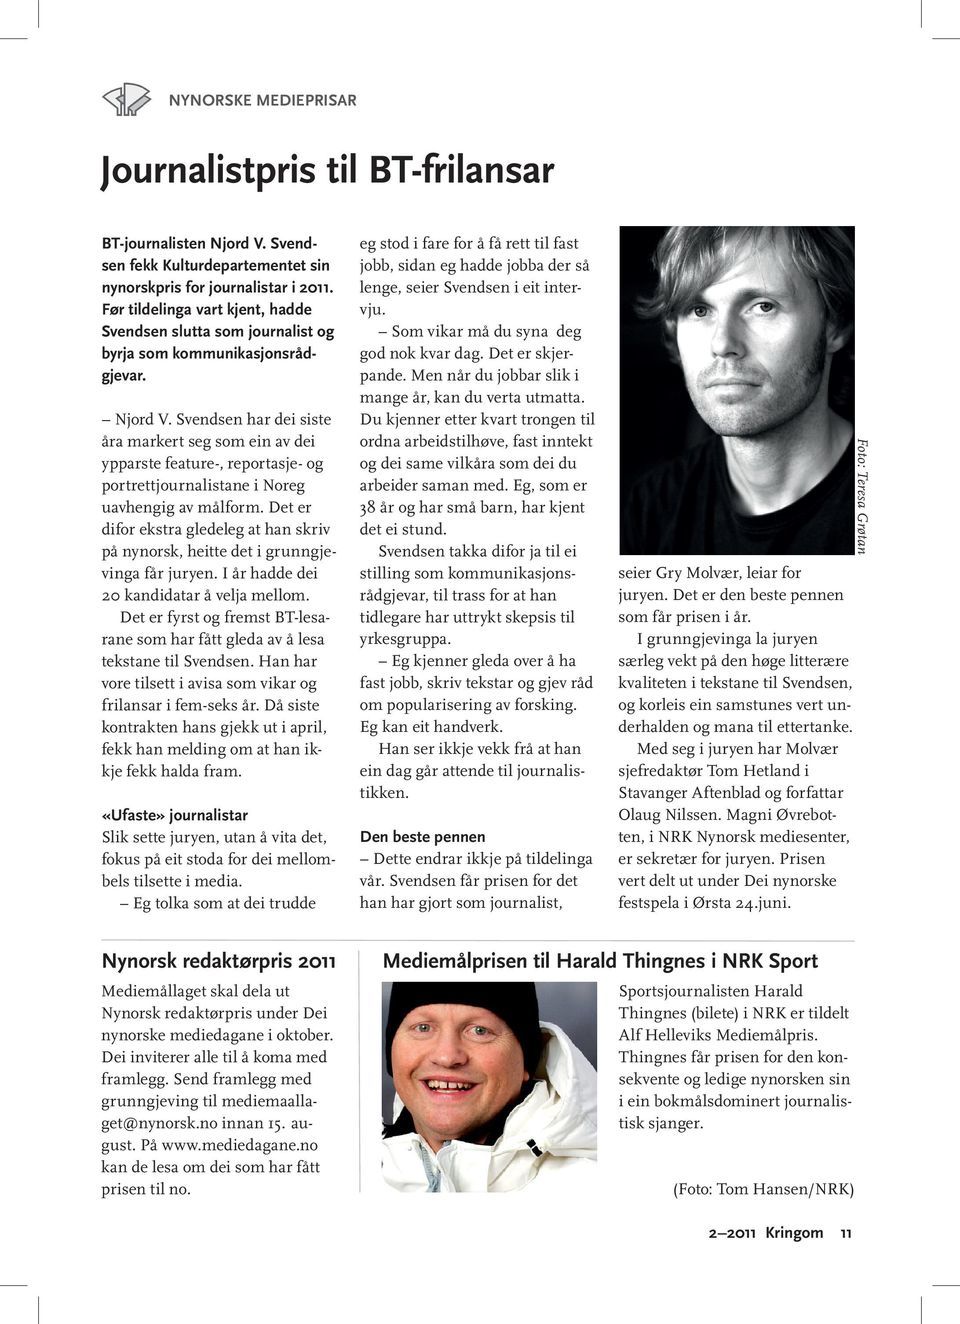 Svendsen har dei siste åra markert seg som ein av dei ypparste feature-, reportasje- og portrettjournalistane i Noreg uavhengig av målform.